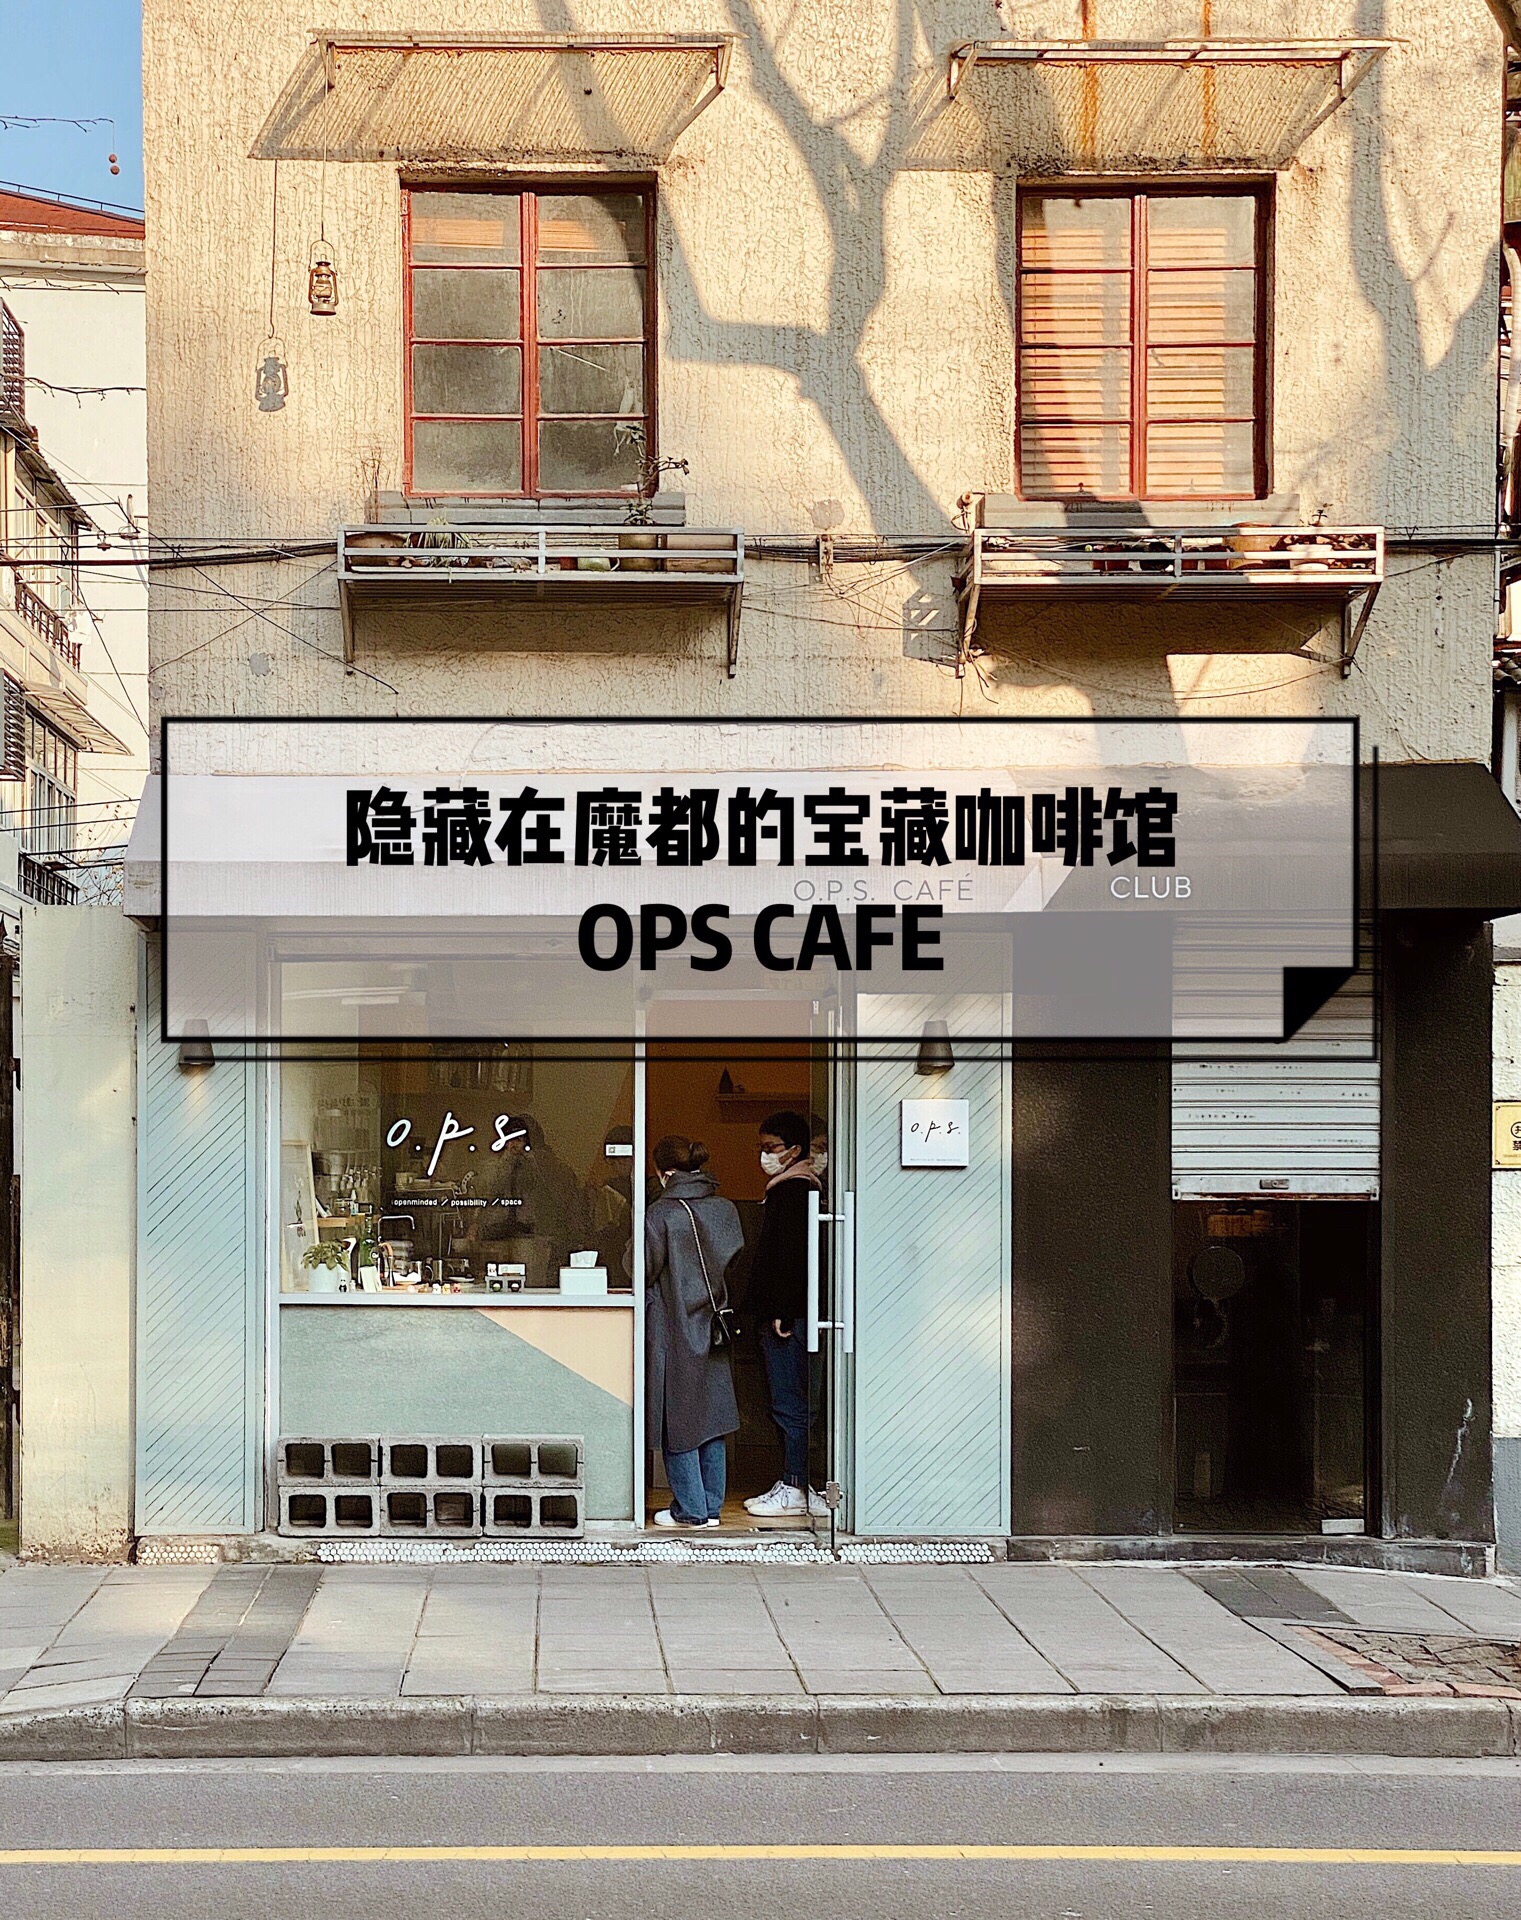 上海宝藏咖啡馆——OPS CAFE  魔都算是一个咖啡文化比较浓厚的城市，拥有众多特色咖啡店！  🍃